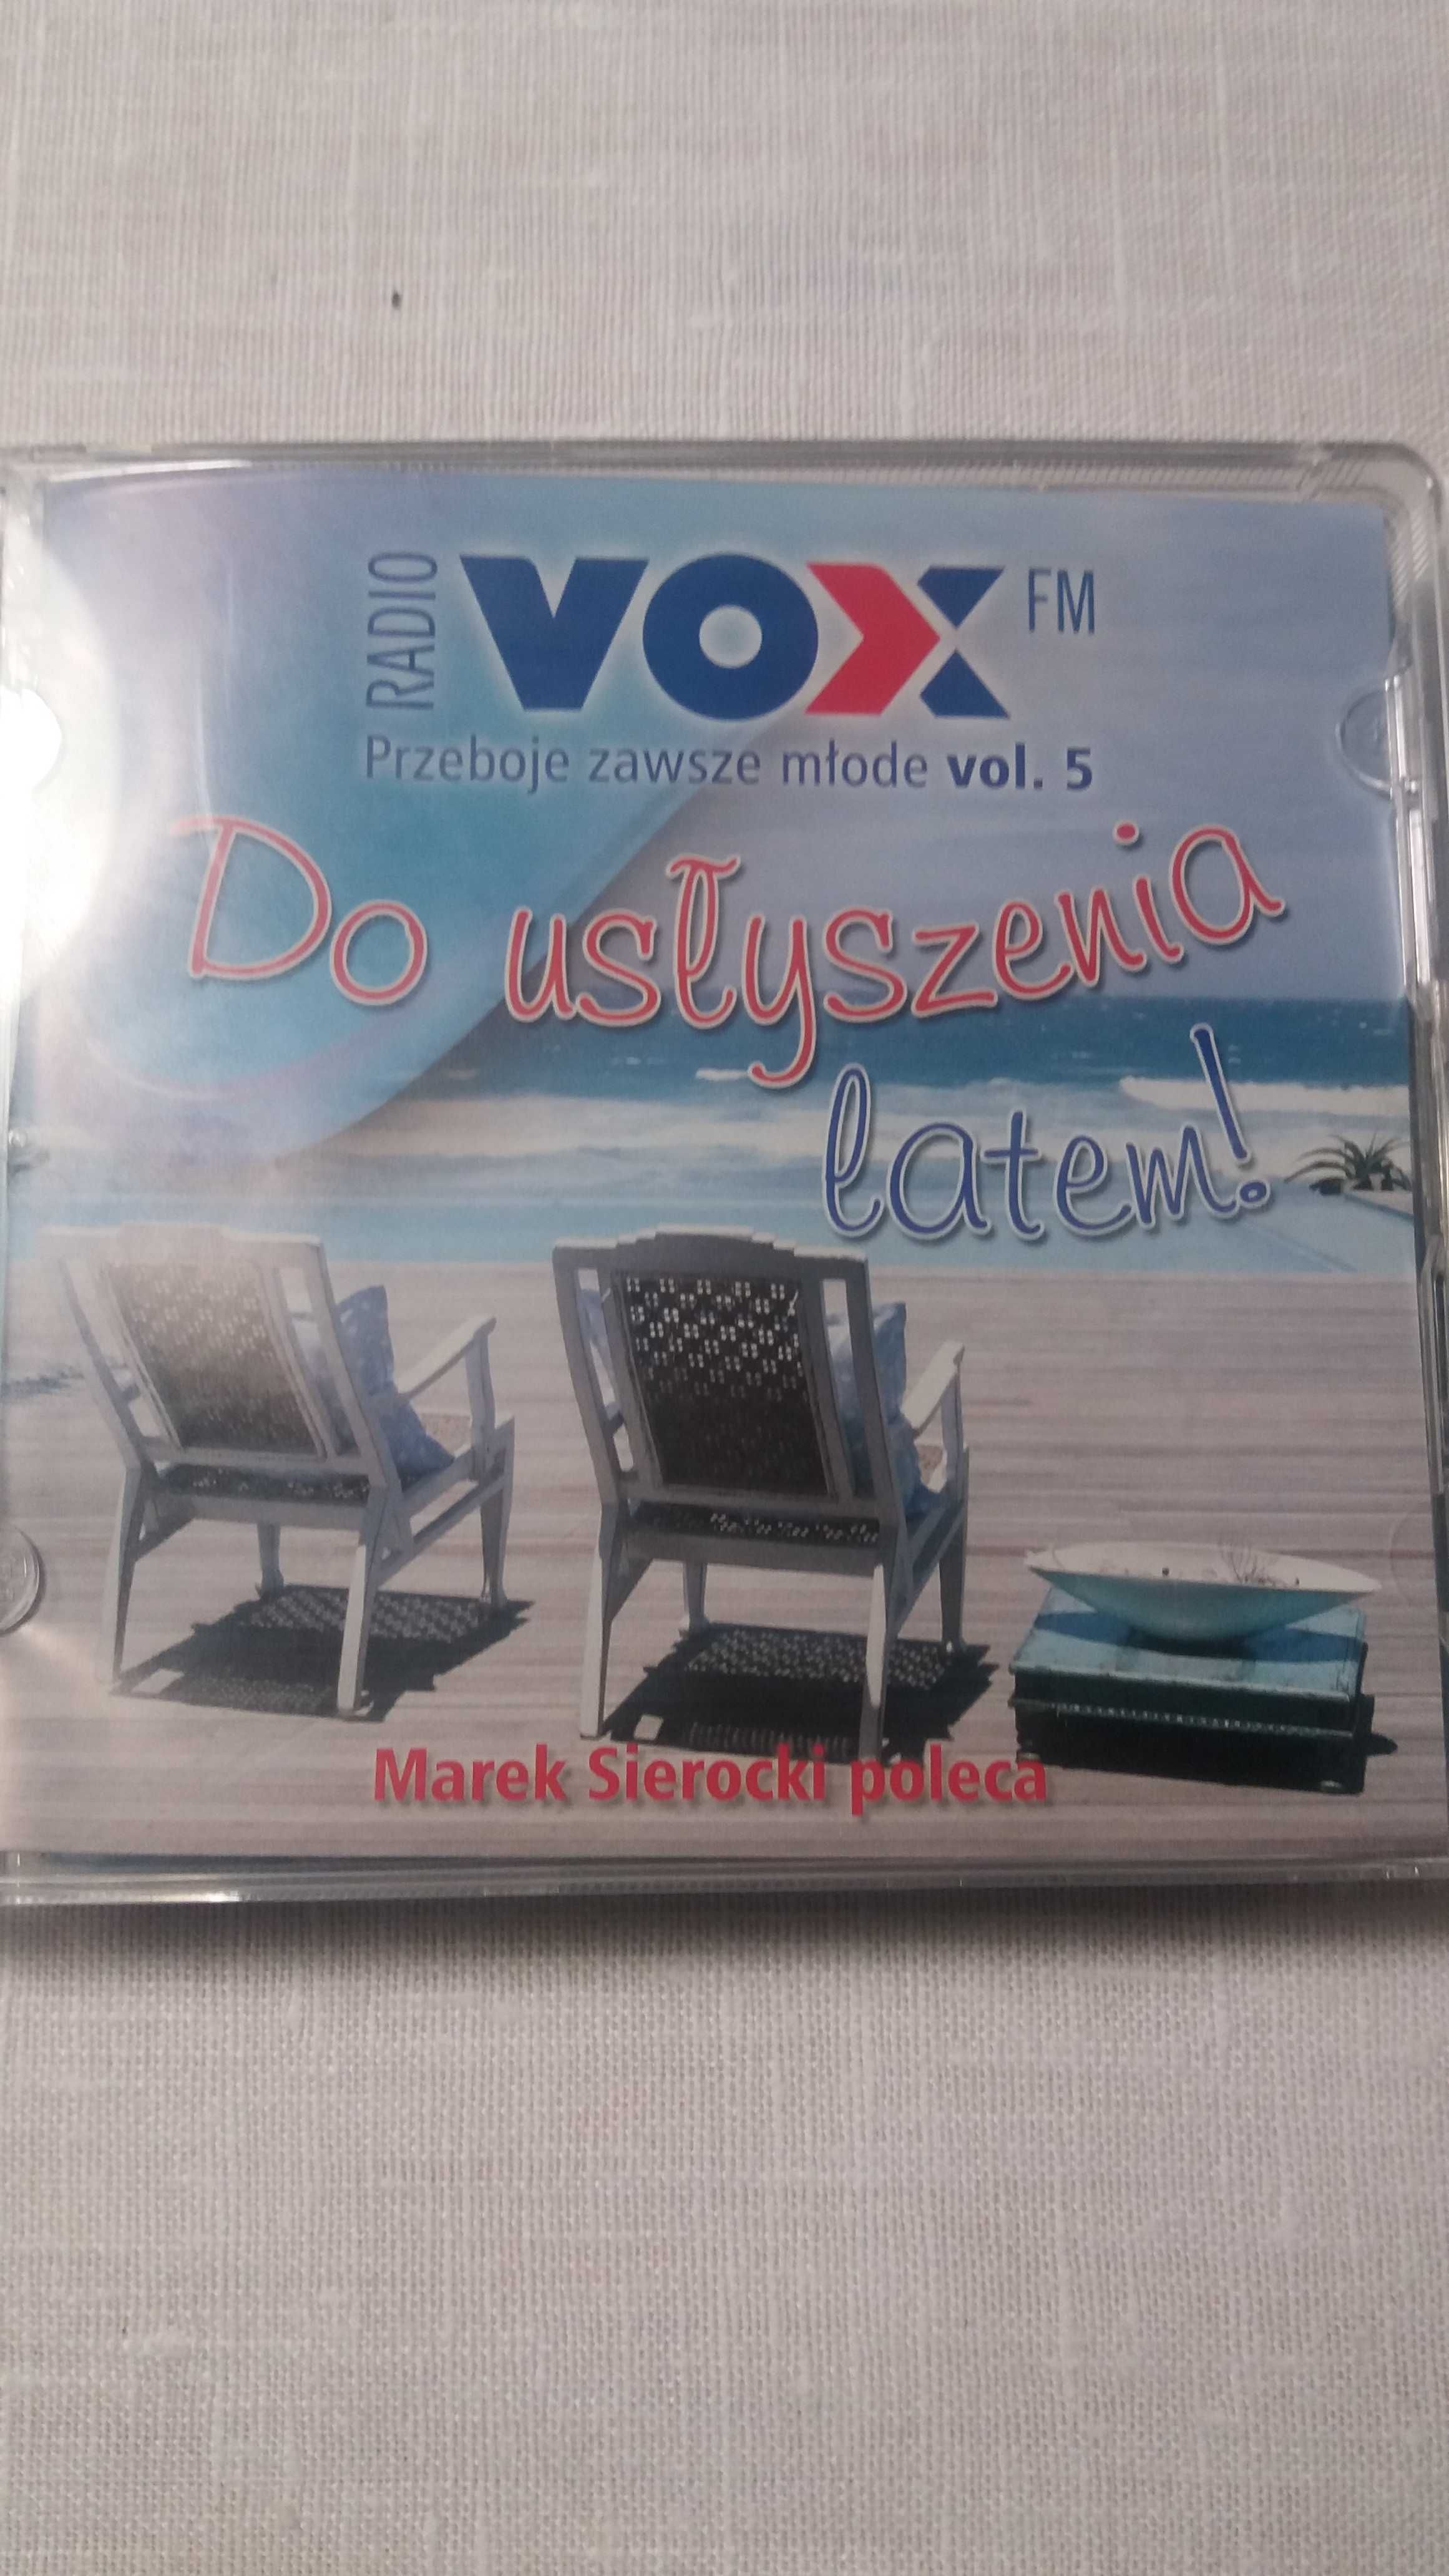 Radio VOX FM Przeboje zawsze mlode vol.5 album 3 CD box